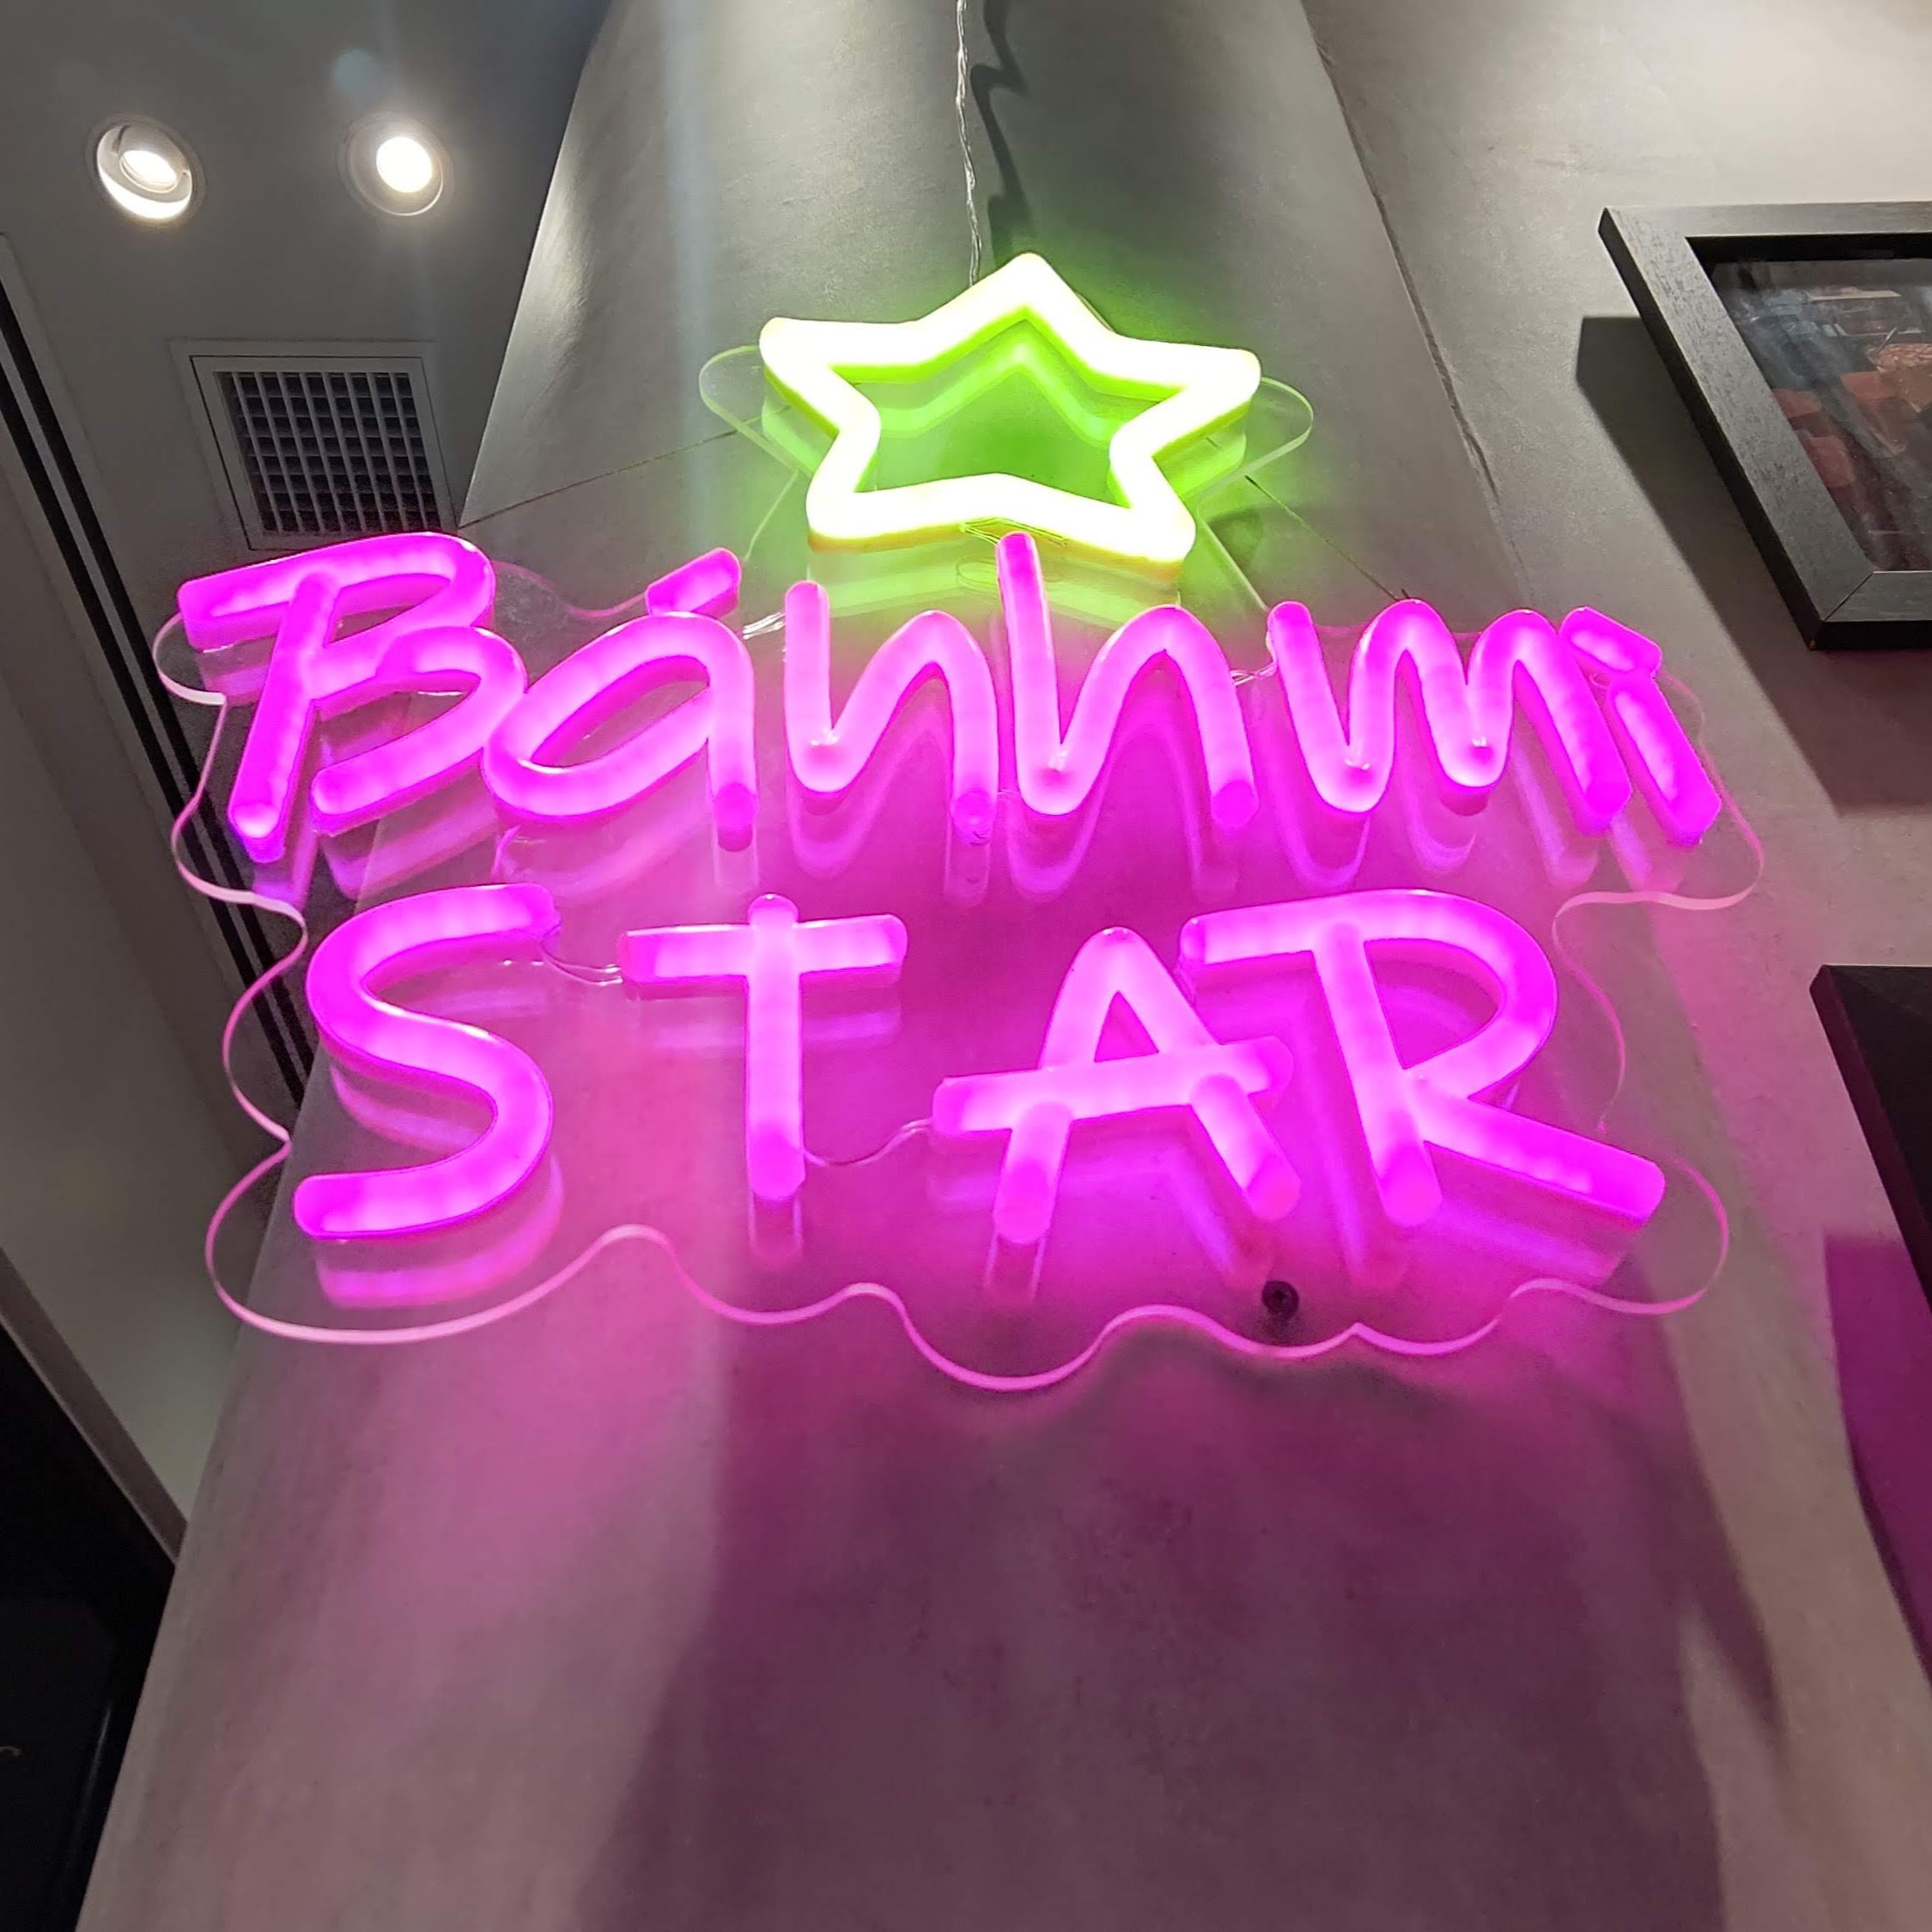 東京都渋谷区 渋谷ストリーム BANH MI STAR SHIBUYA by Nha Viet Nam